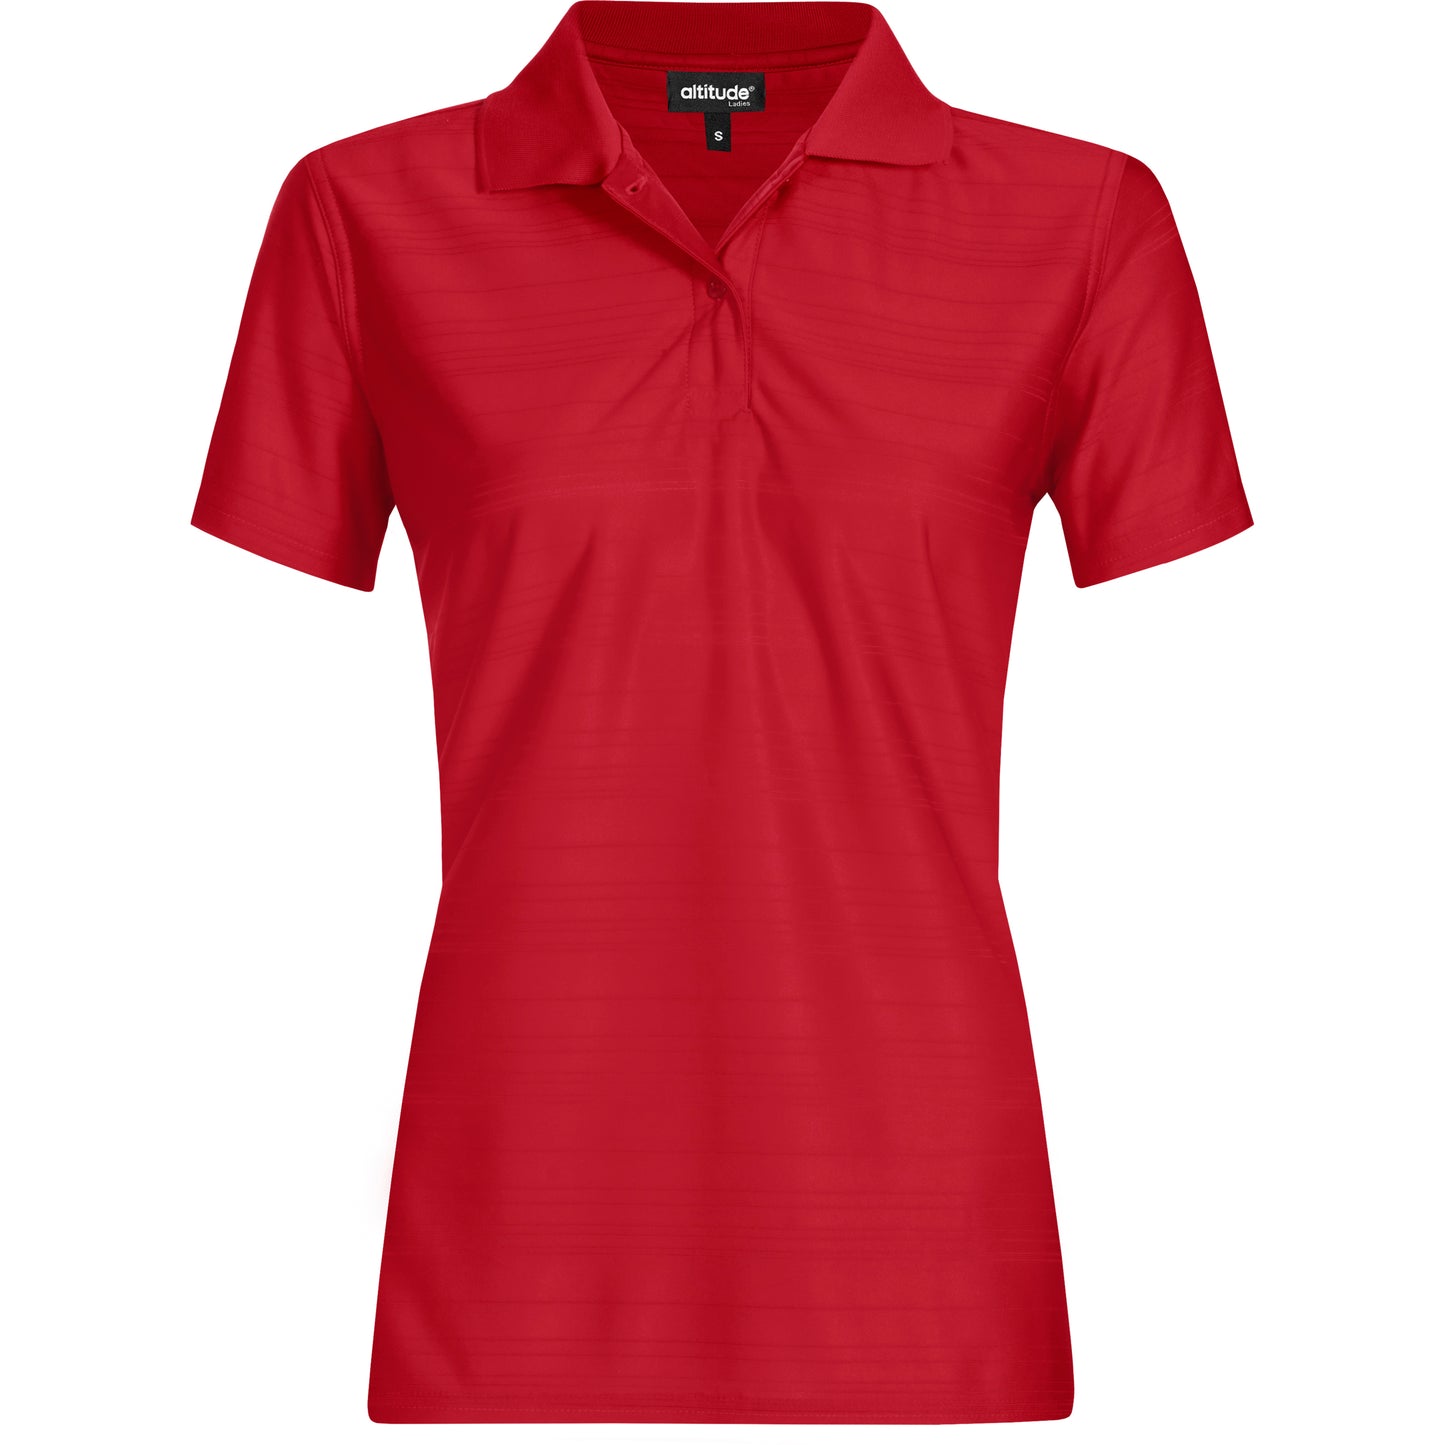 Ladies Milan Golf Shirt